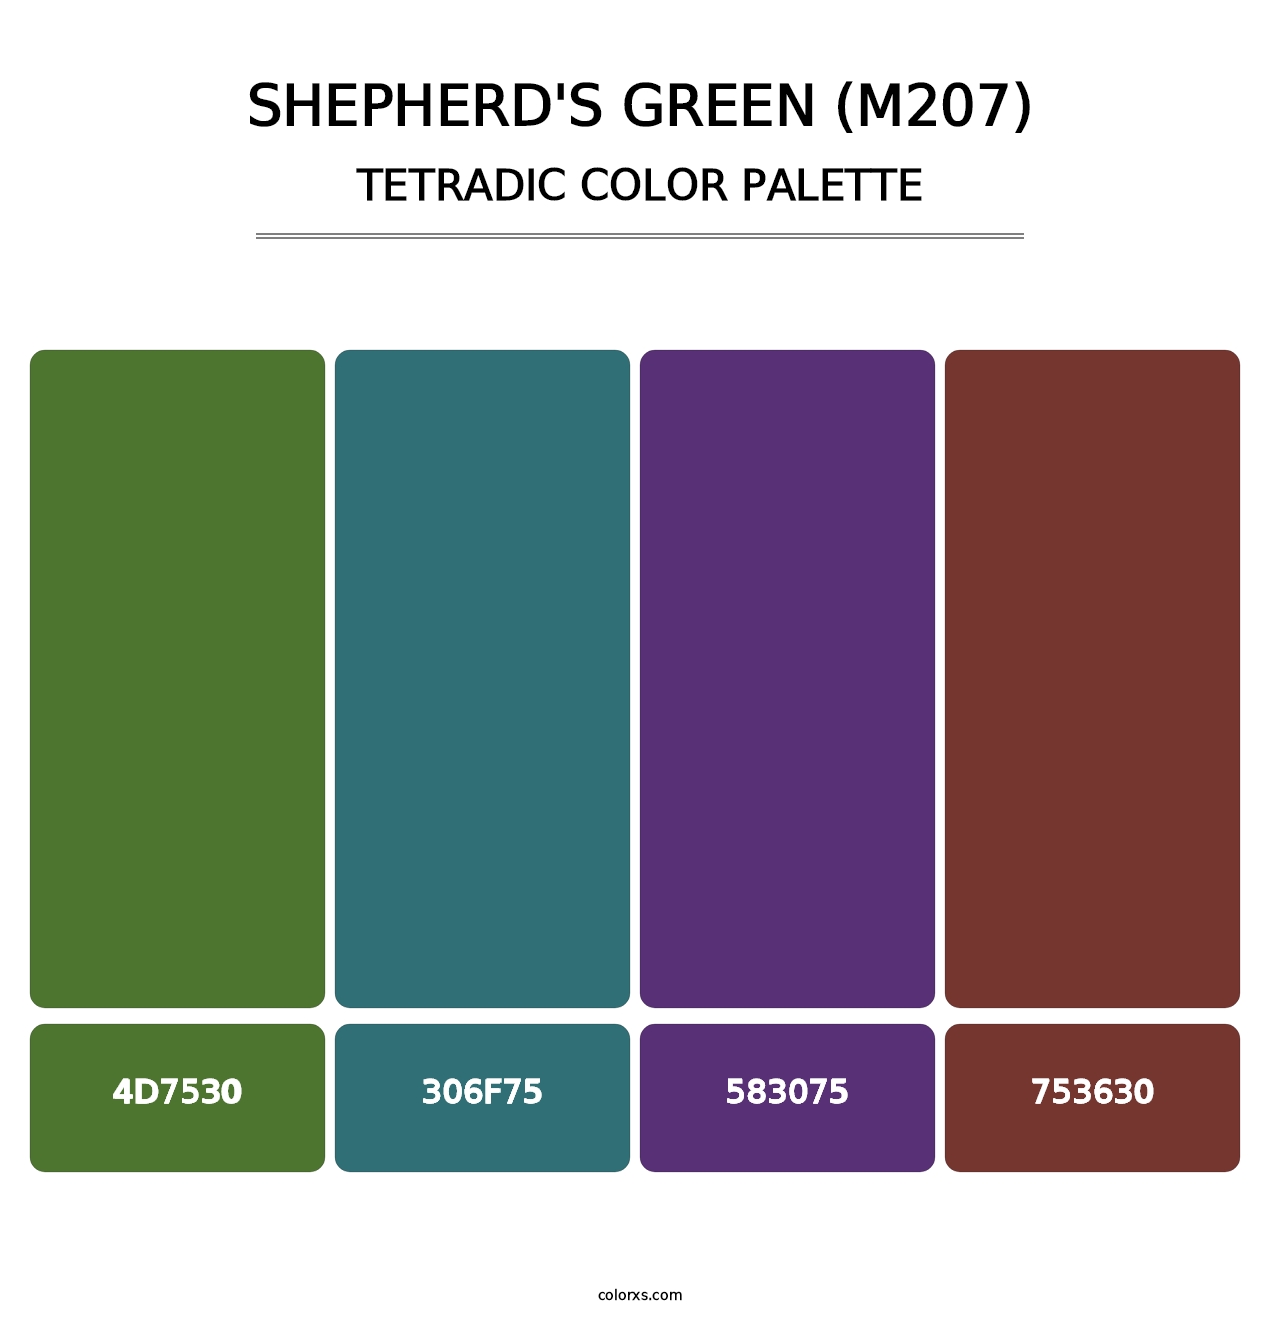 Shepherd's Green (M207) - Tetradic Color Palette